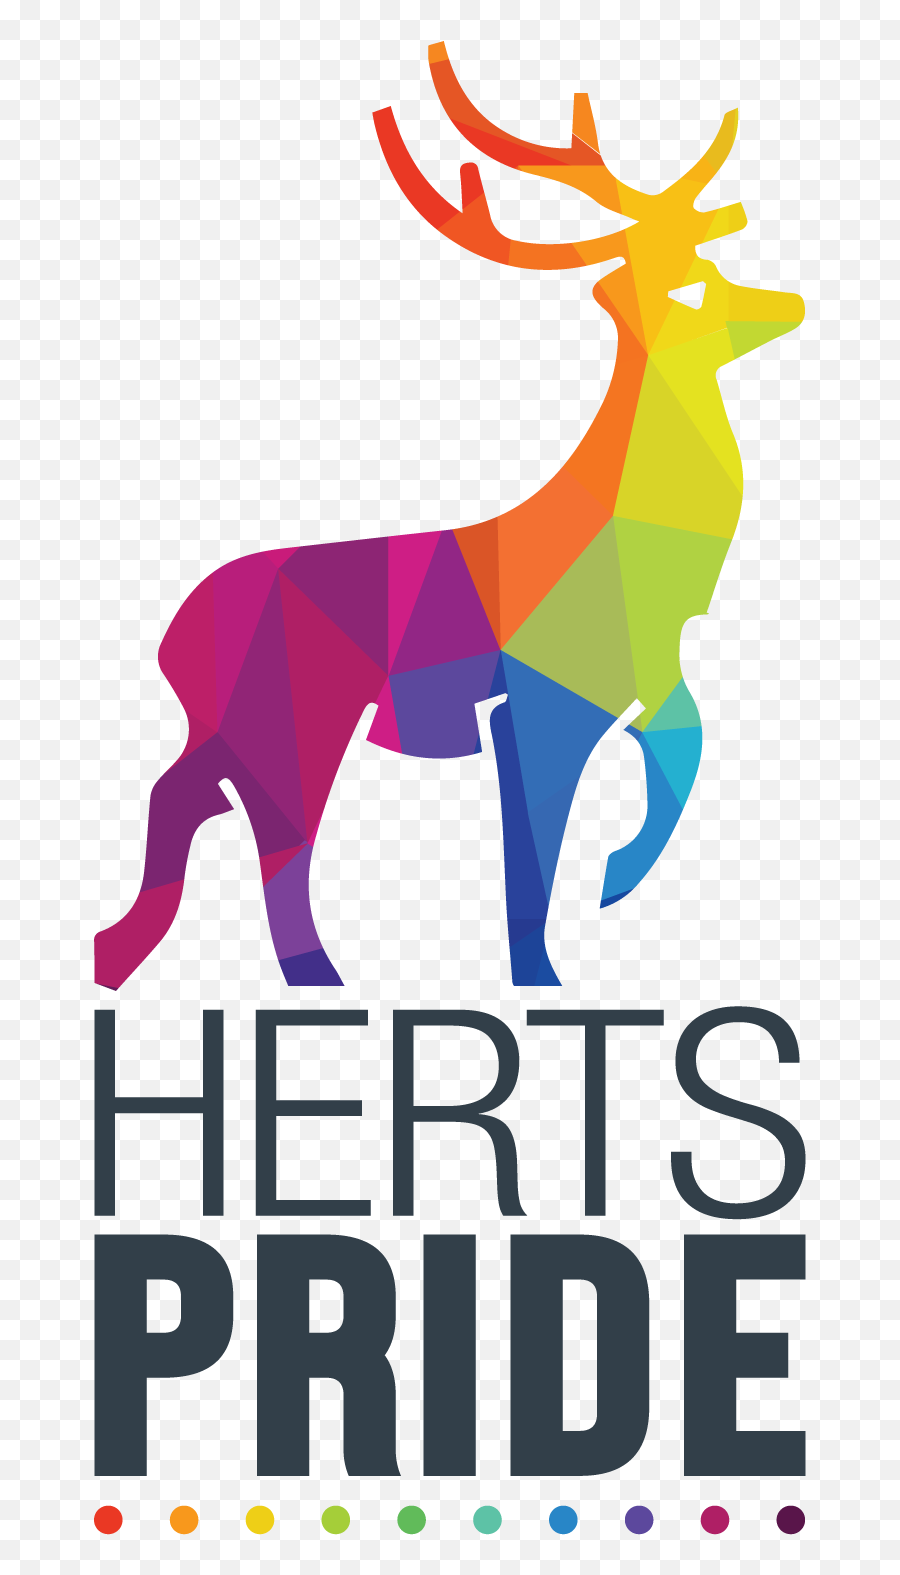 Hereu0027s The New Logo I Designed For Hertfordshire Pride - Elk Png,Deer Head Logo